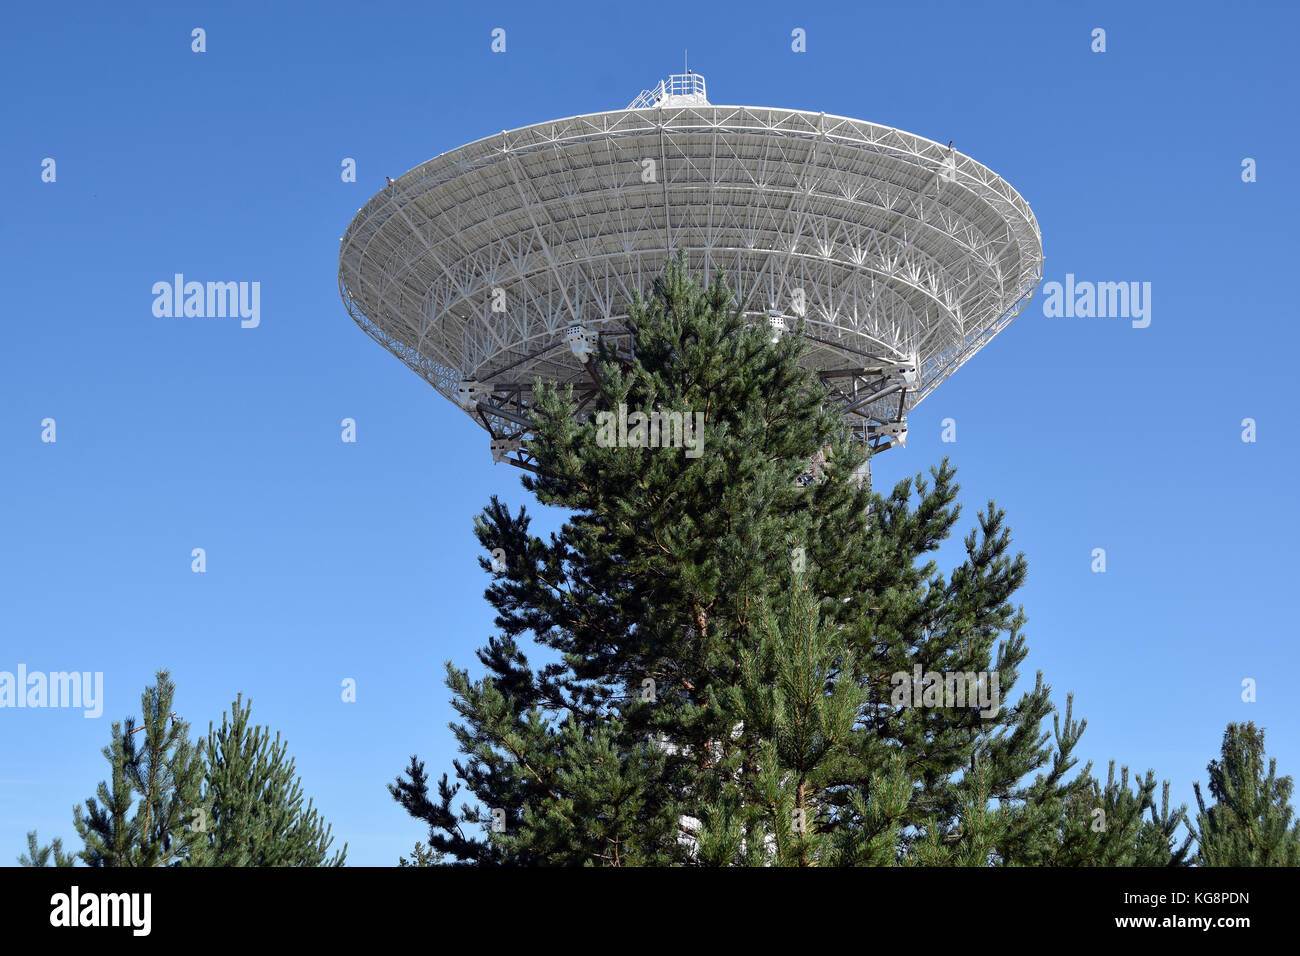 Il radiotelescopio vicino Ibene in Lettonia è stato eseguito per spiare le telecomunicazioni occidentale durante la guerra fredda. Poiché il crollo sovietico, è gestito da scienziati. Foto Stock